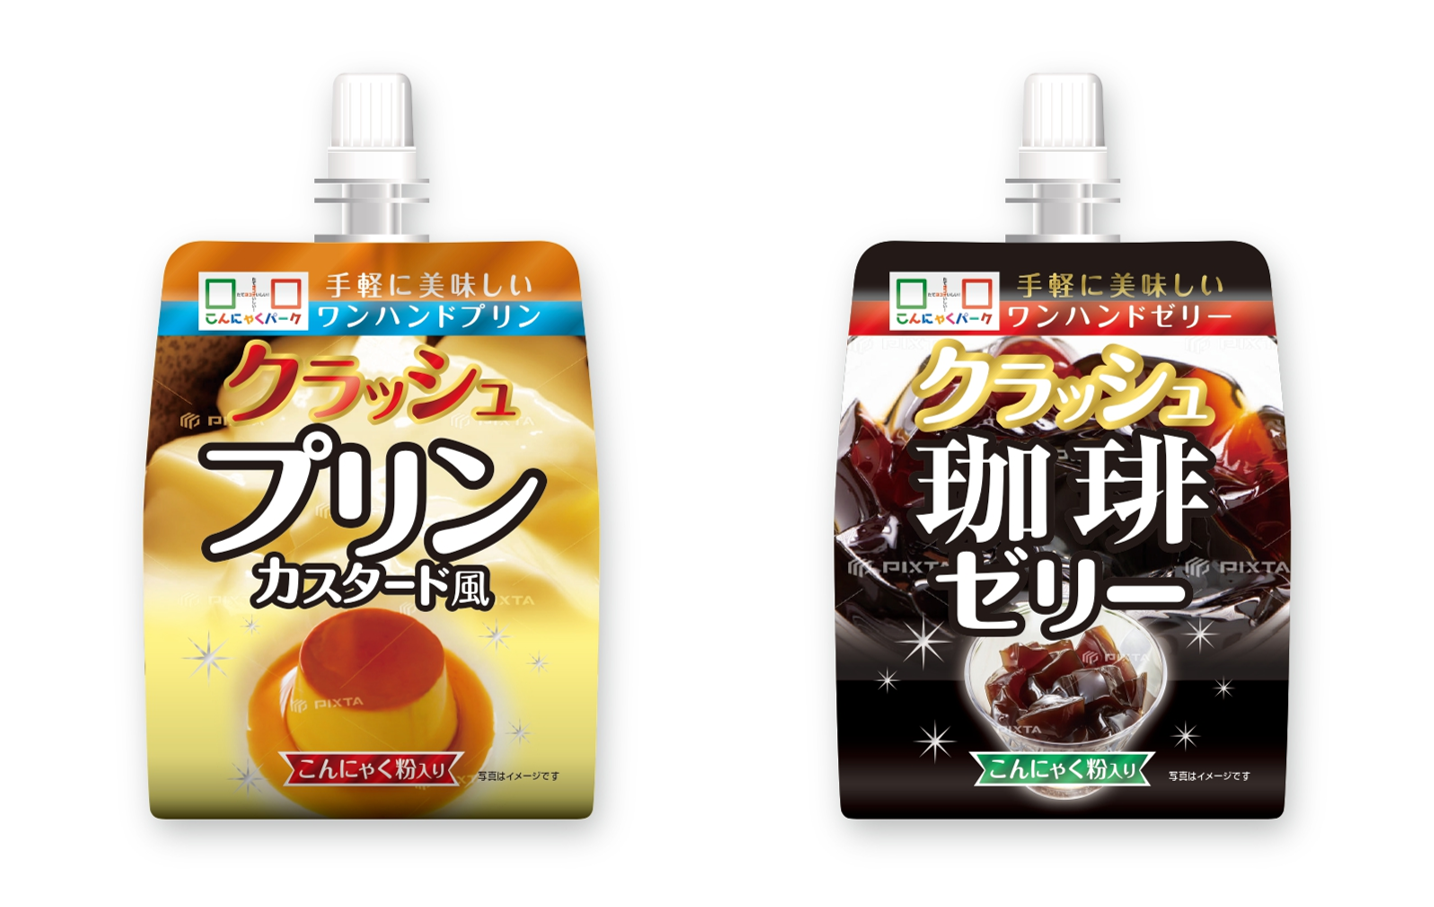 日本発のショコラ専門店「ベルアメール」の2020年秋冬コレクションがスタート！秋におすすめの栗スイーツや新作ショコラも。